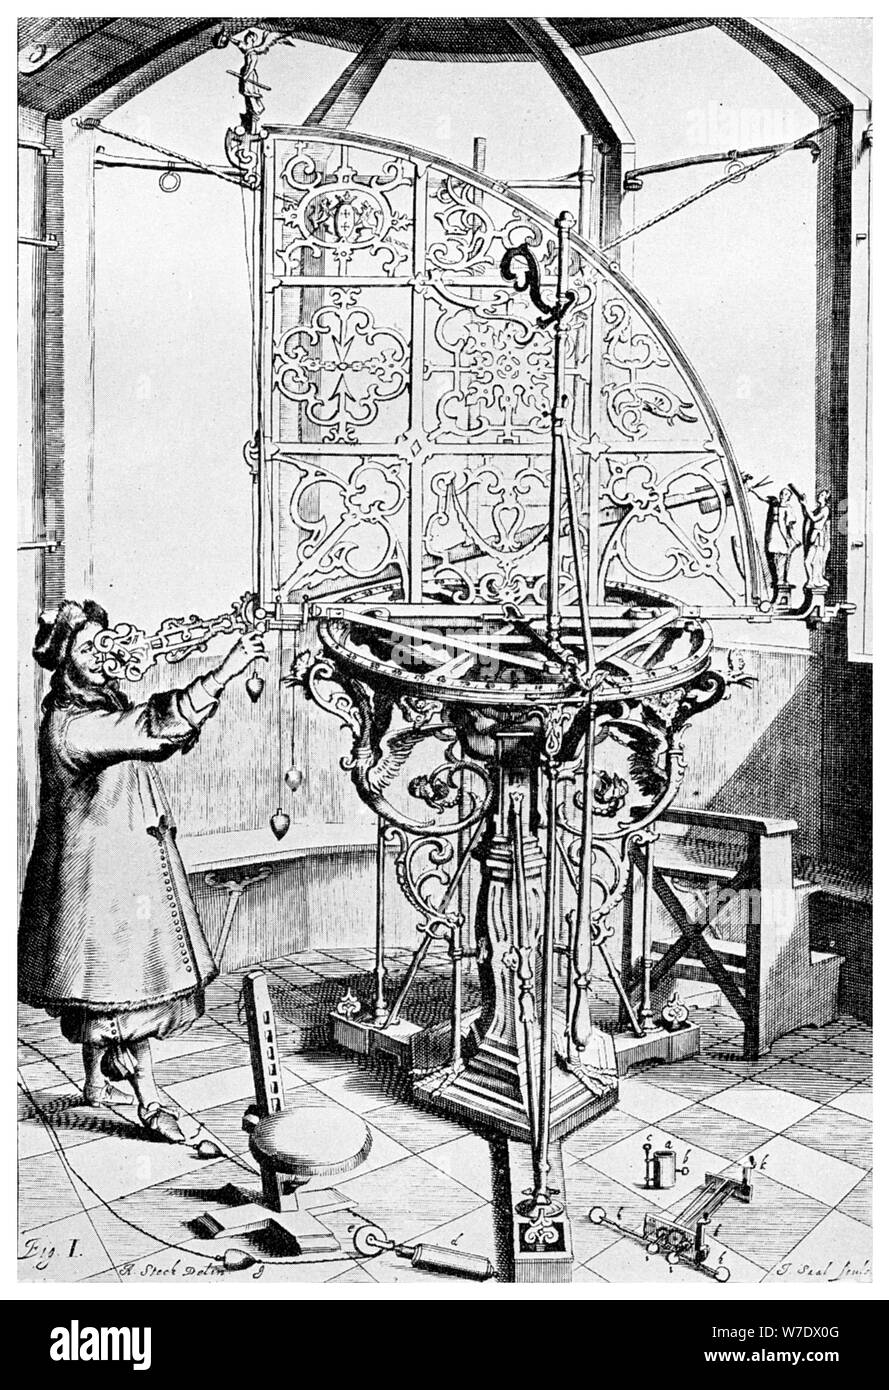 Cruger azimutale del quadrante, 1673 (1956).Artista: Un Steck Foto Stock